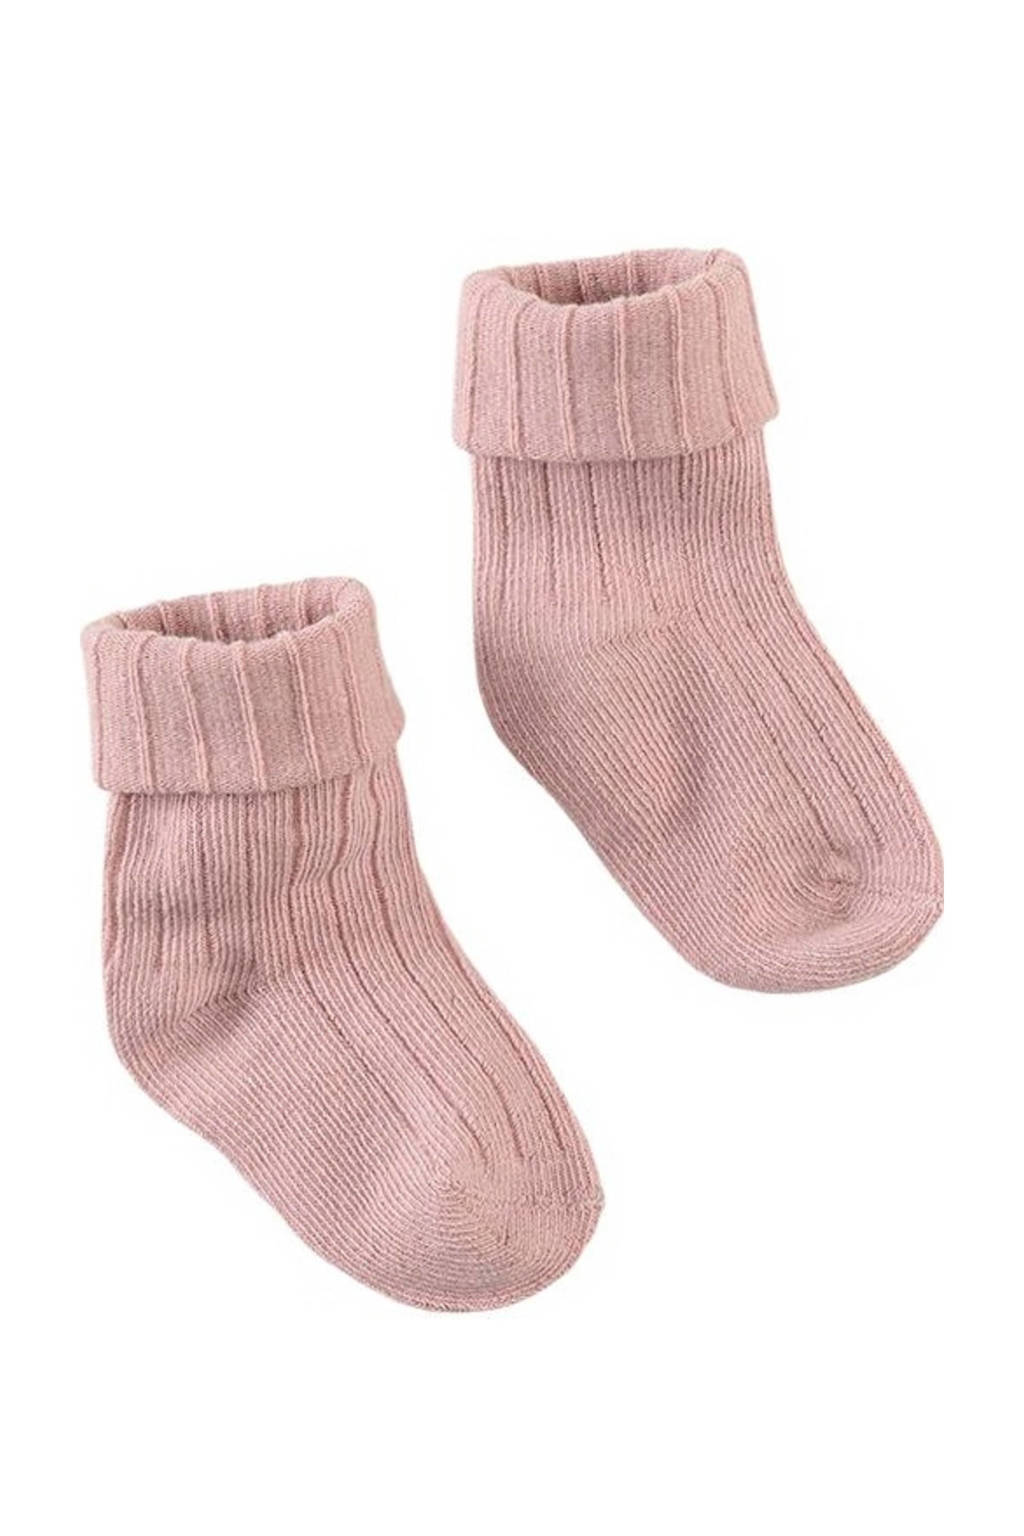 Z8 newborn sokken Jannu lichtroze